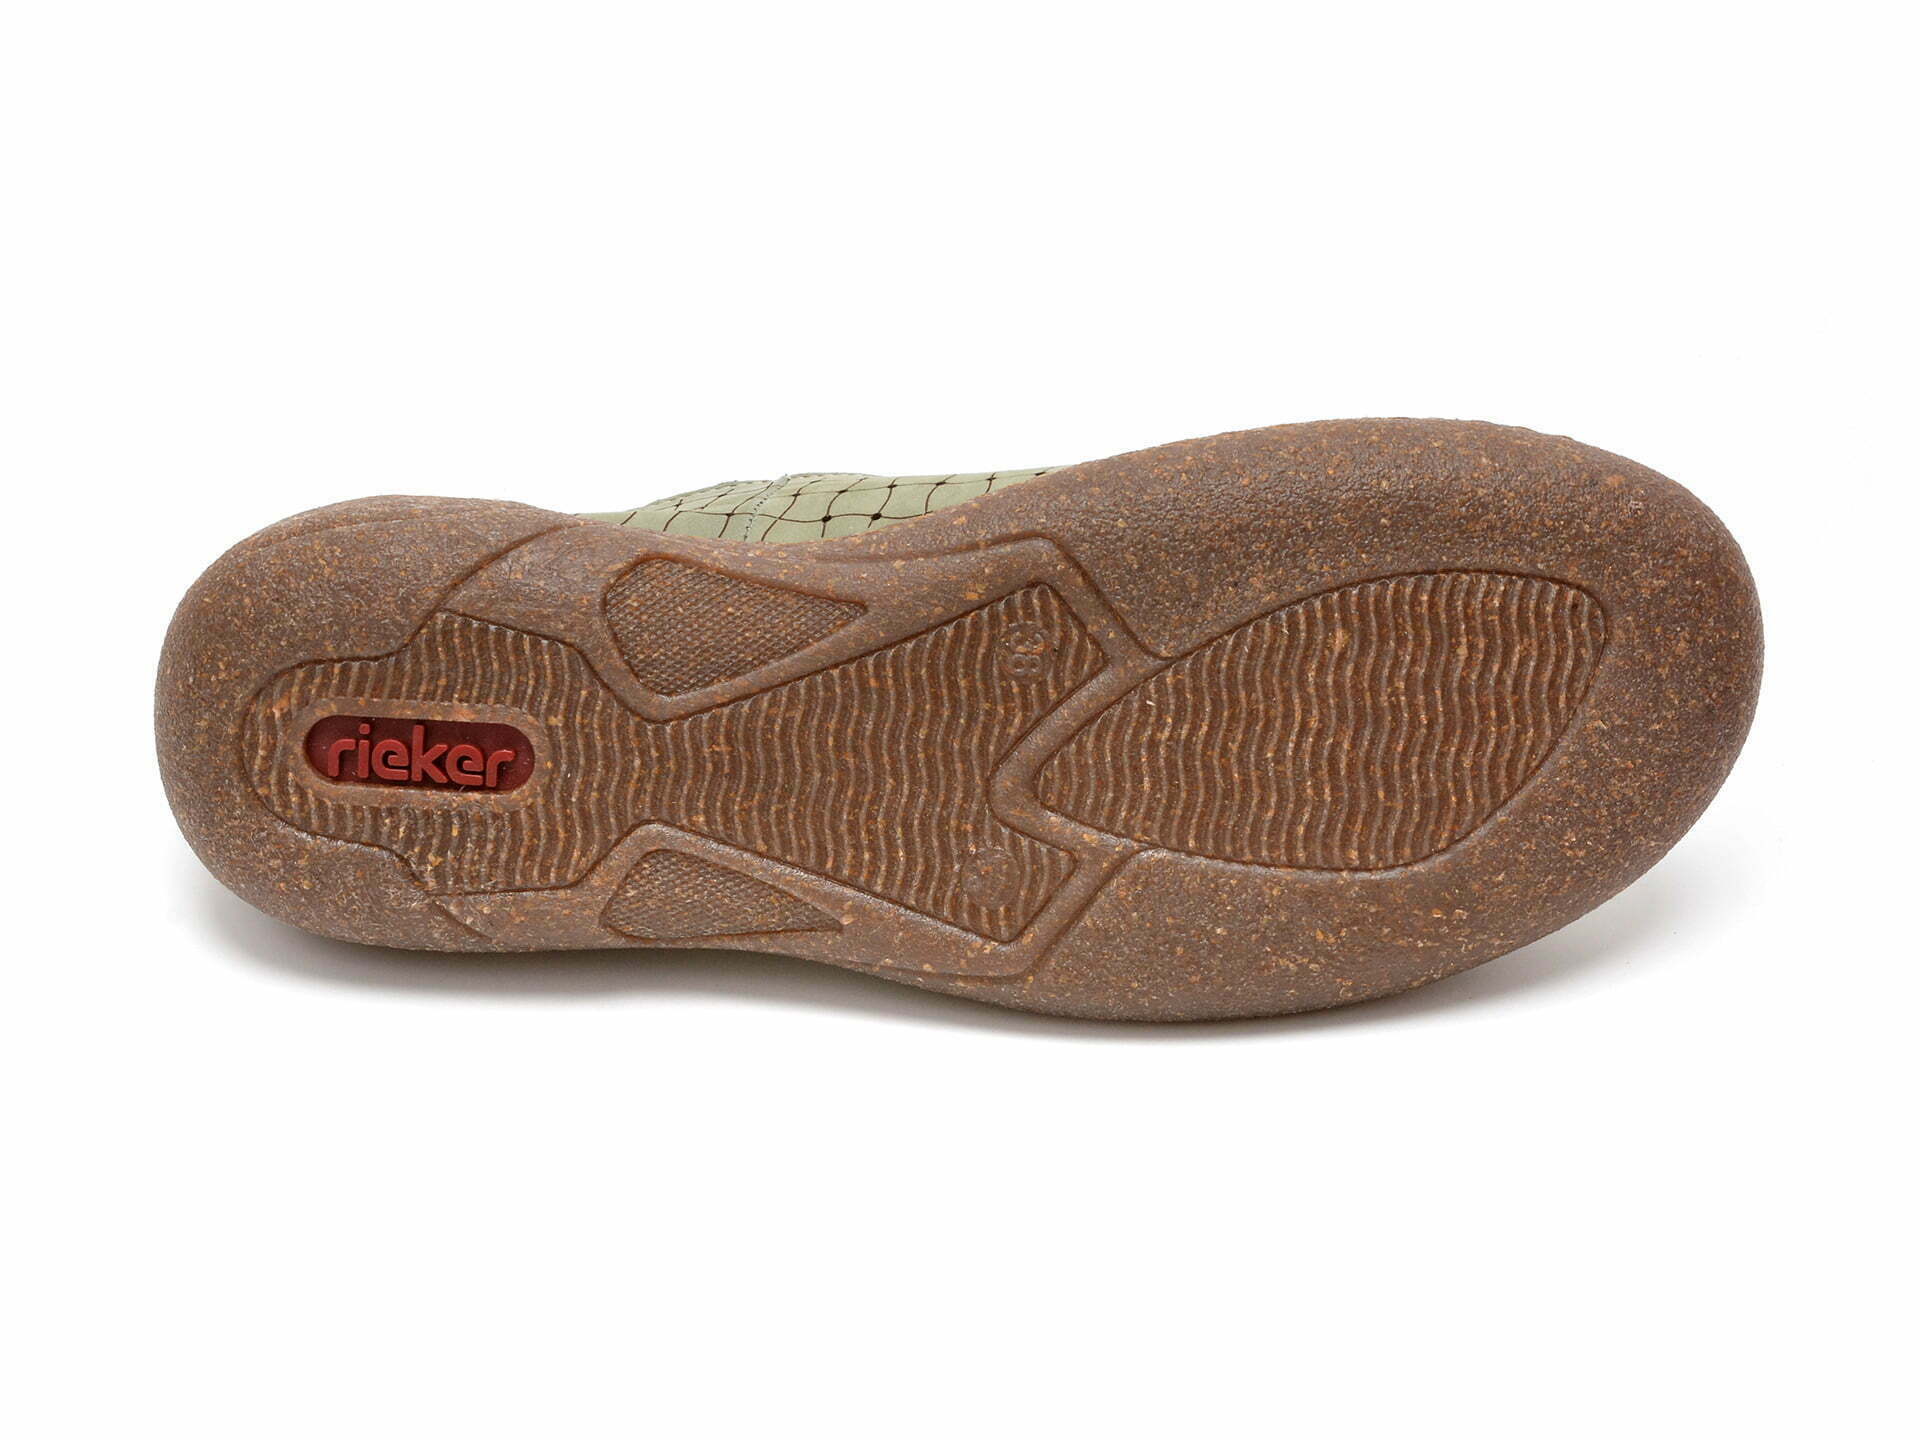 Comandă Încălțăminte Damă, la Reducere  Pantofi RIEKER verzi, 54550, din piele naturala Branduri de top ✓